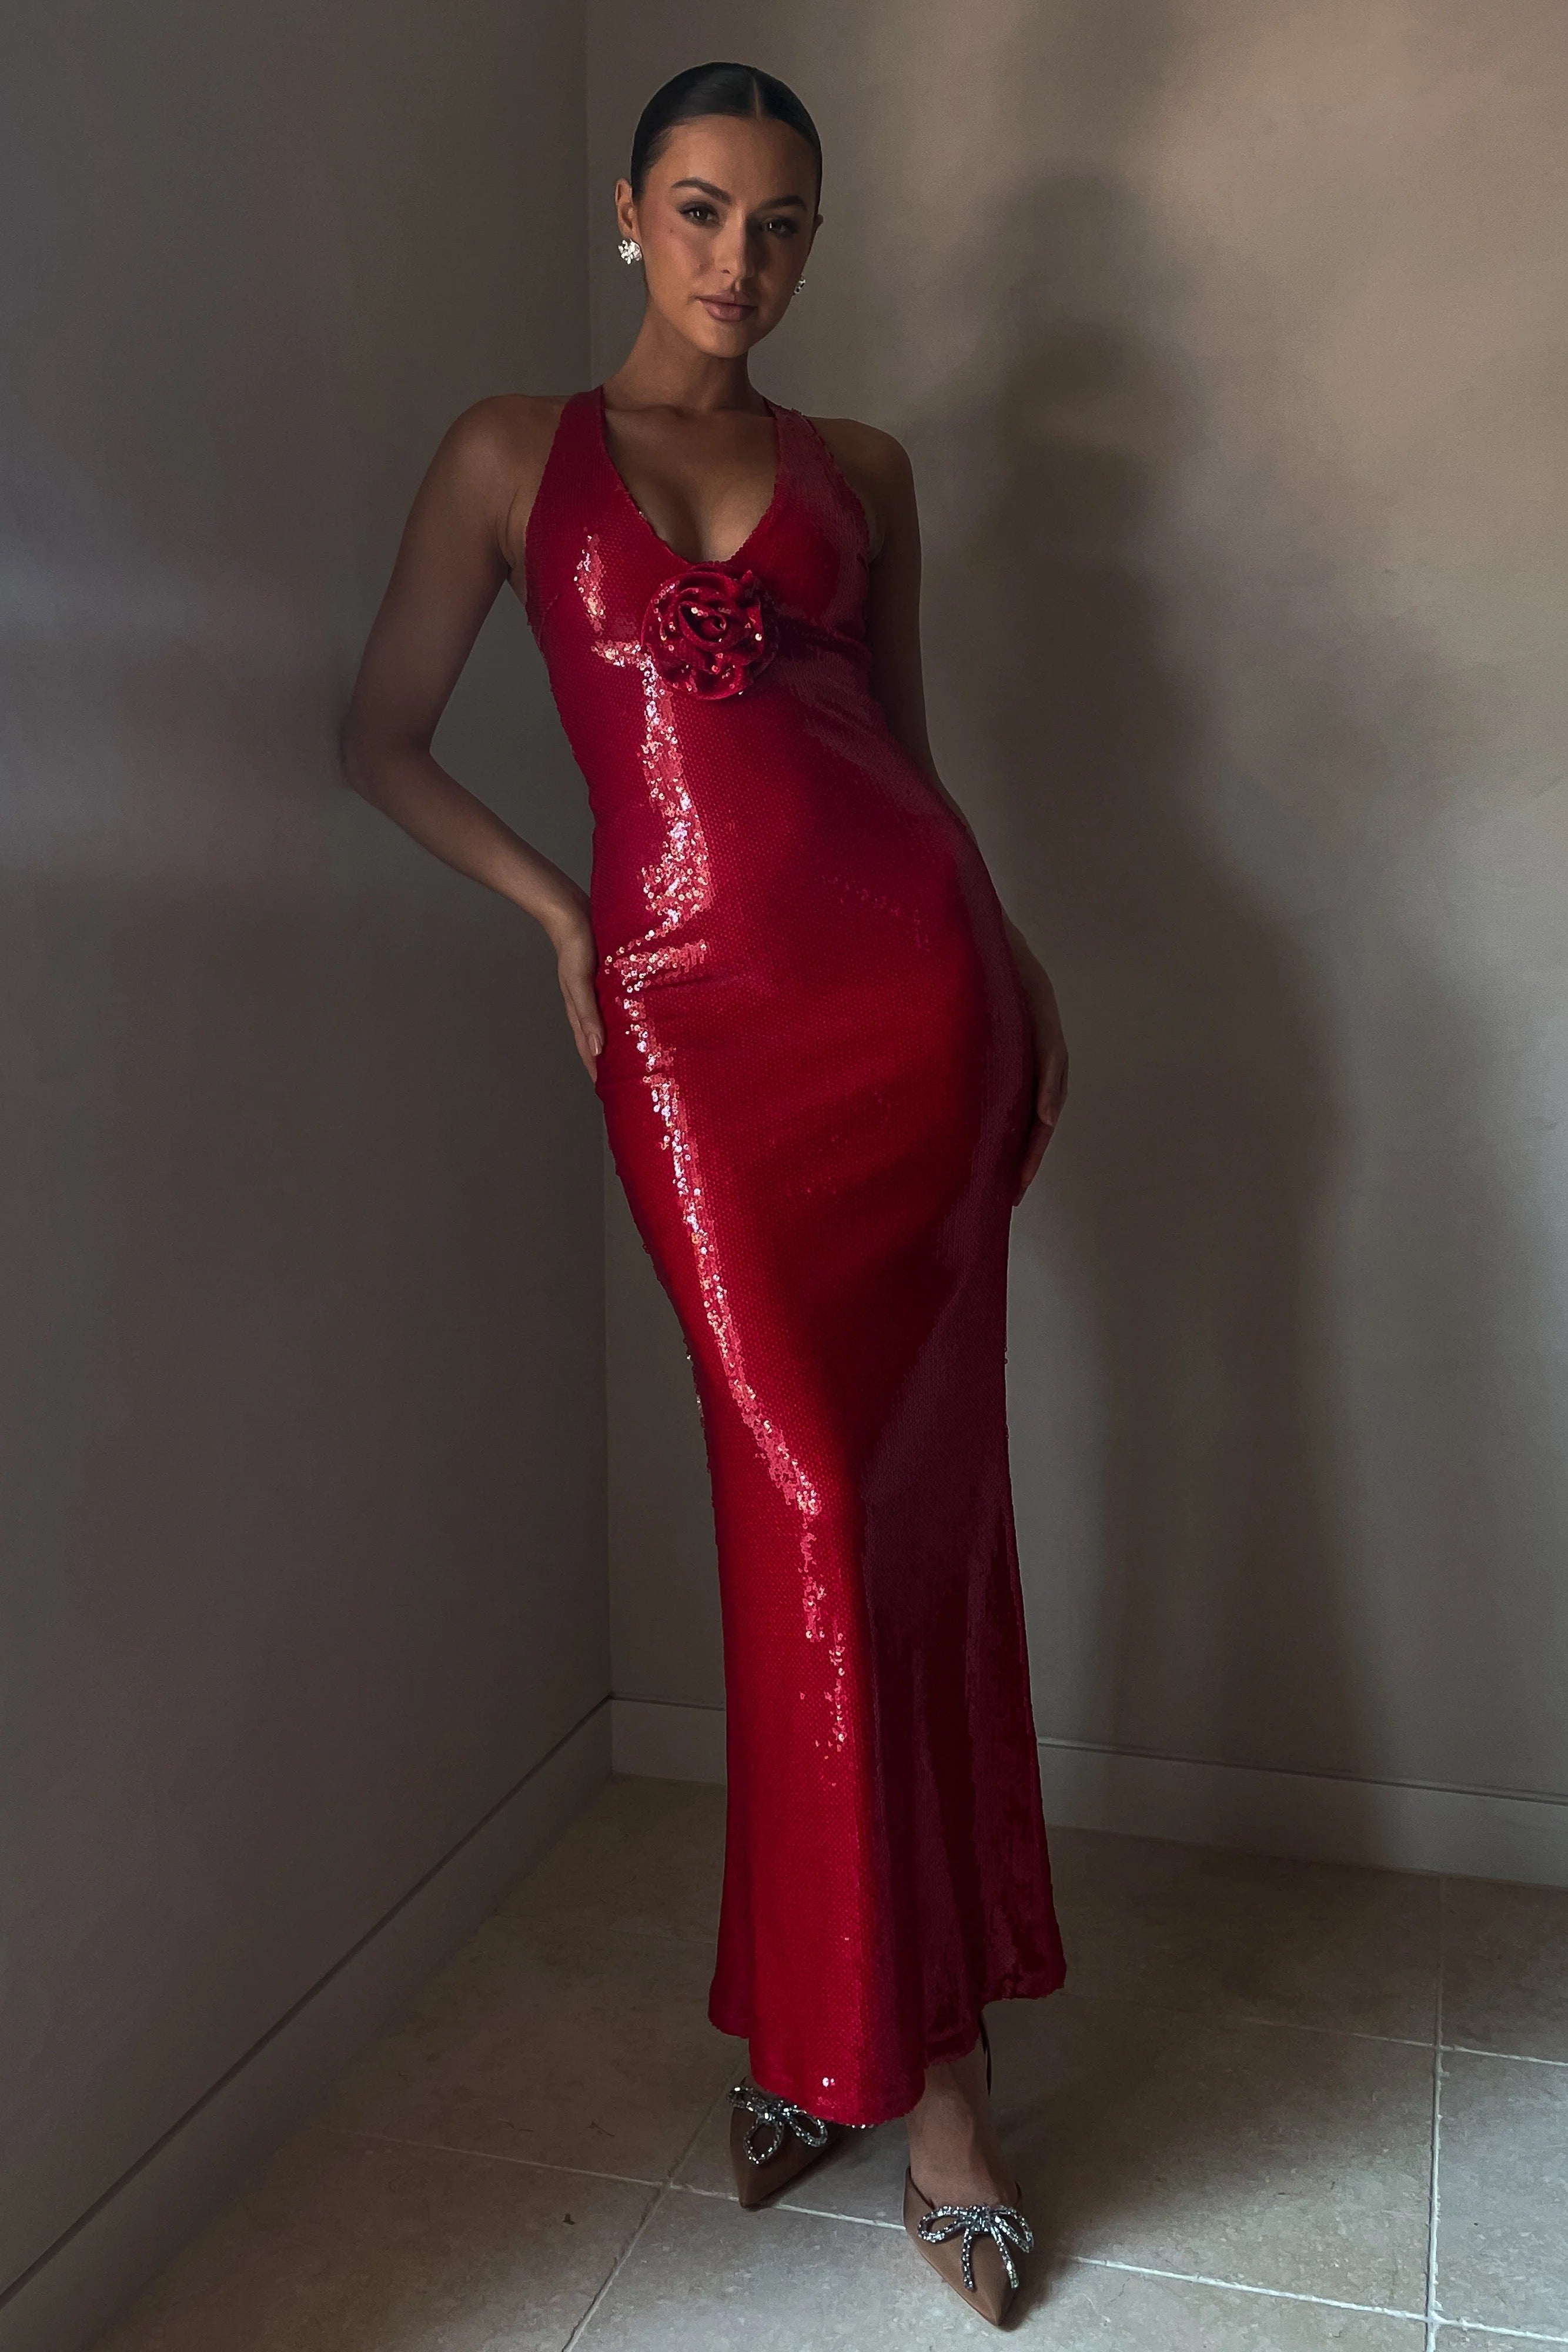 Meshki Rose Sequin Maxi Dress